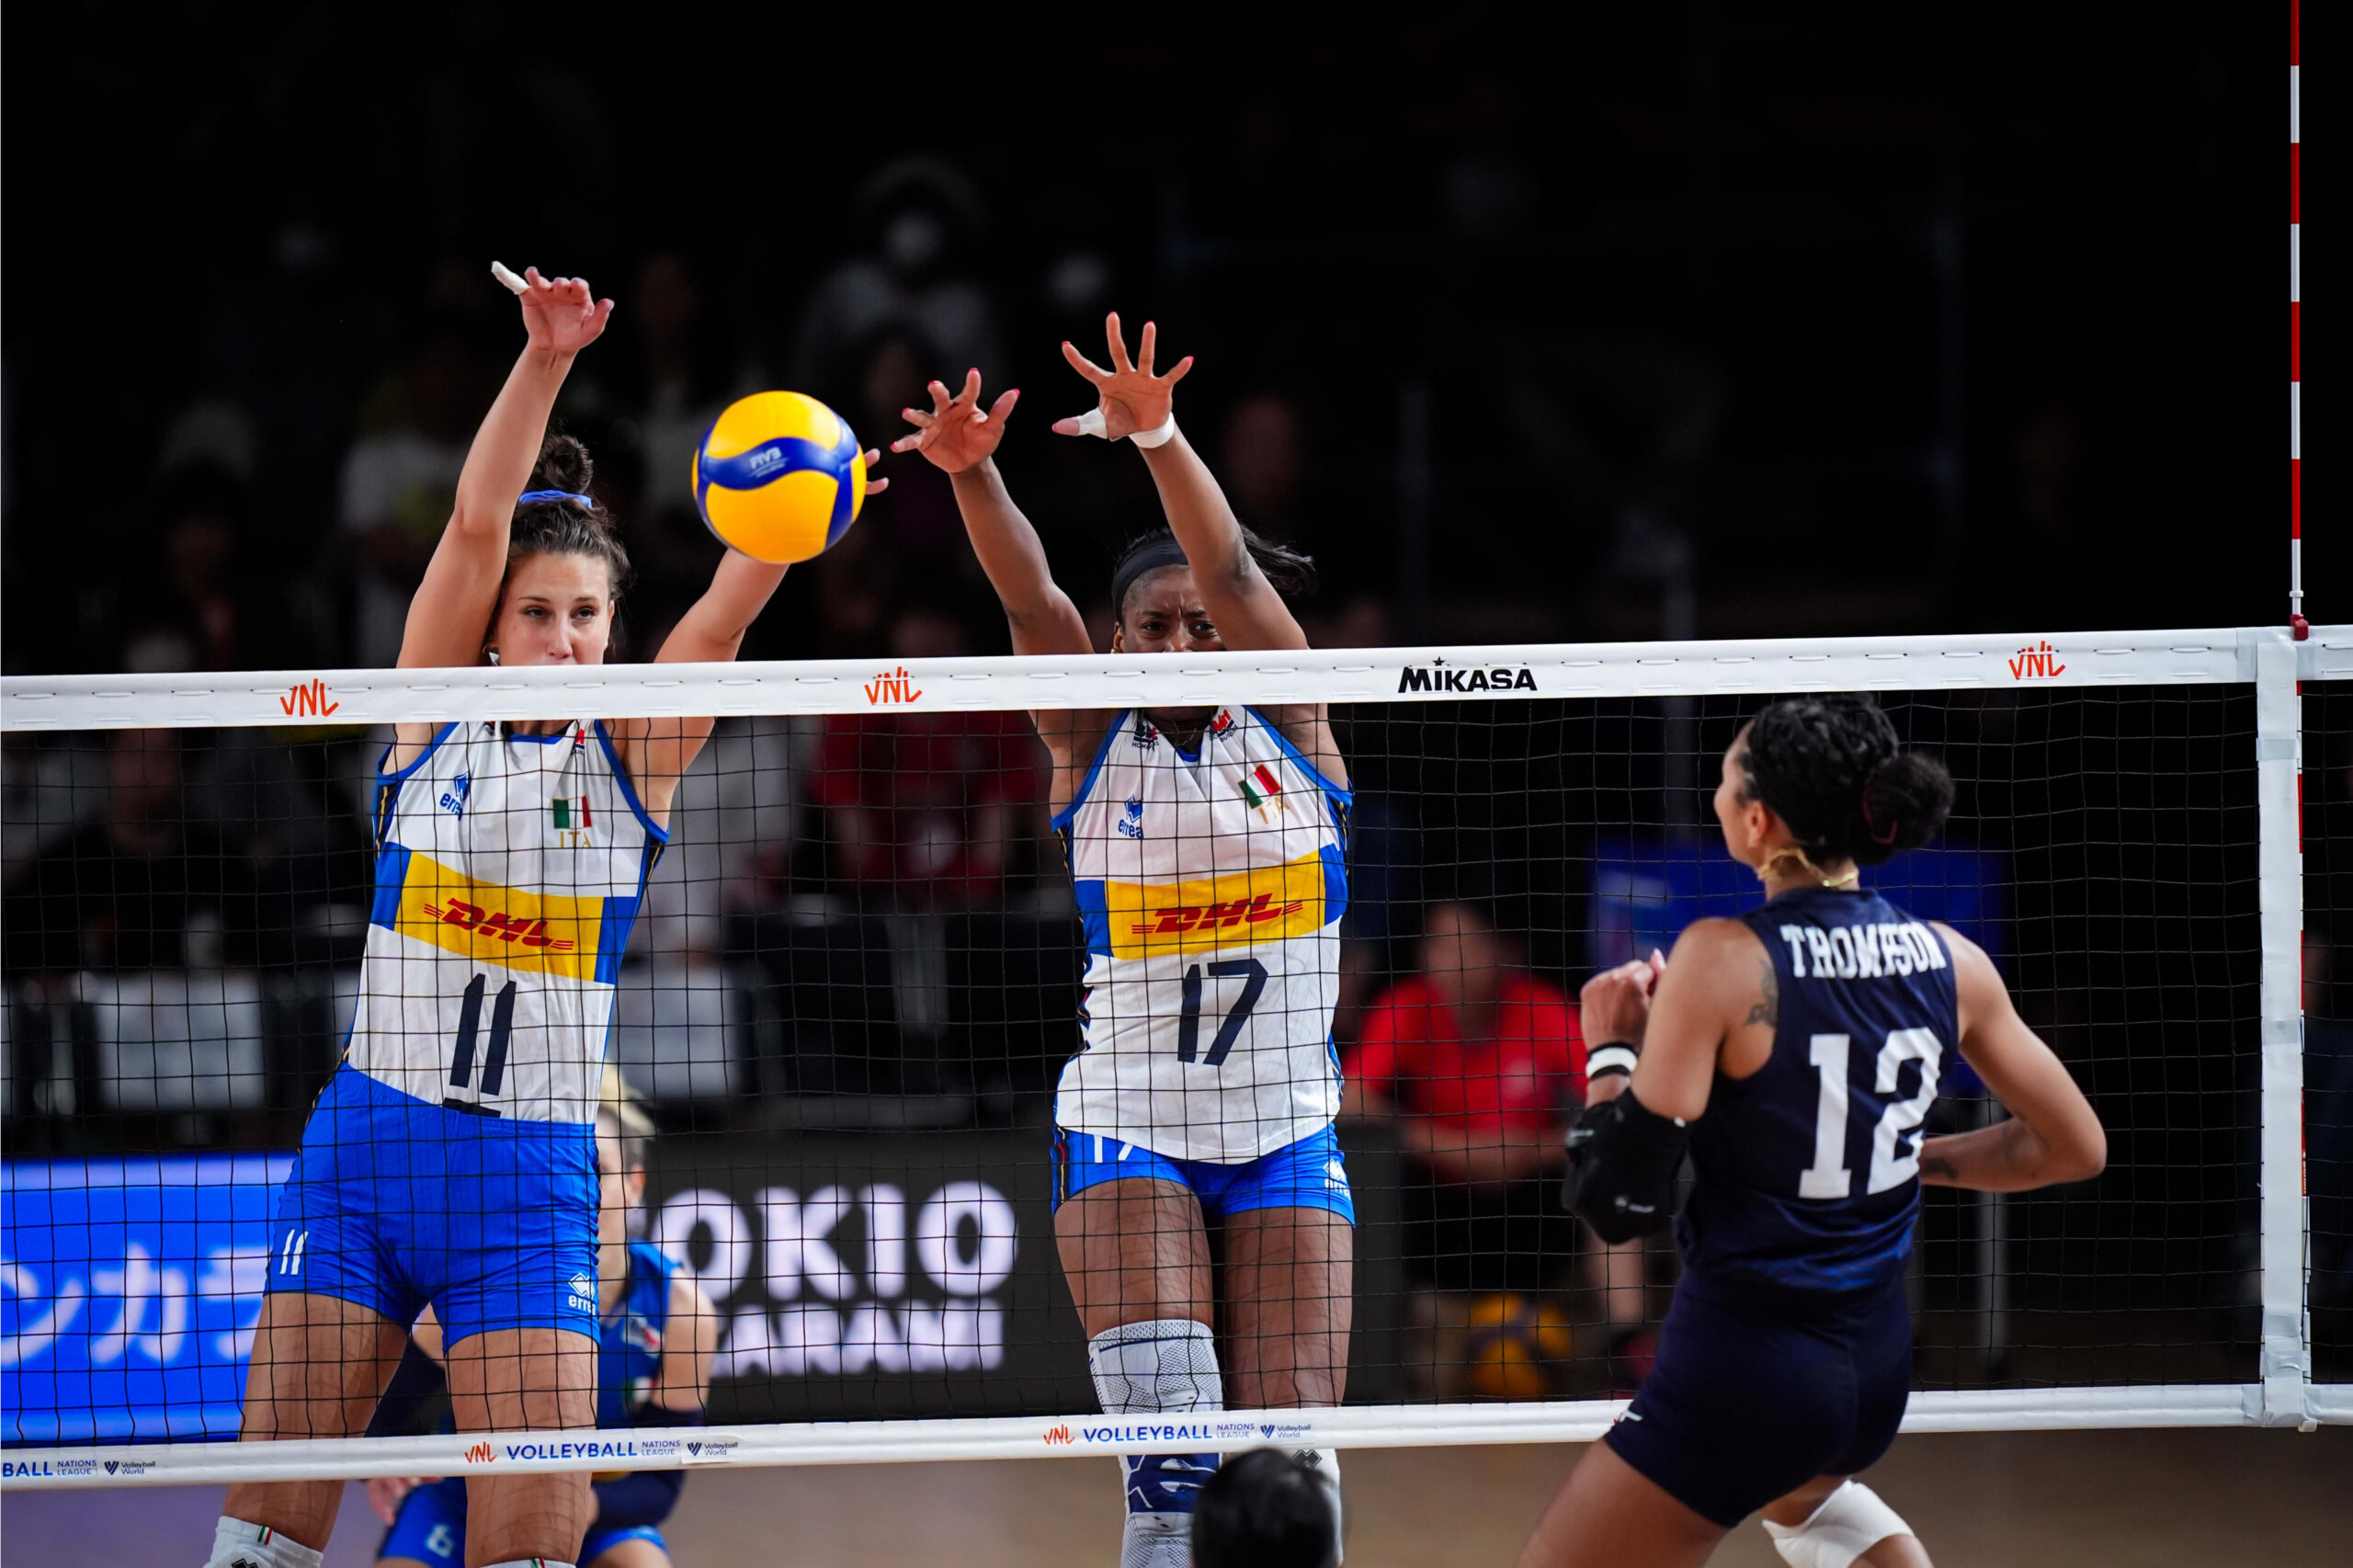 LIVE Italia Serbia 3 1, Nations League volley femminile in DIRETTA: le azzurre soffrono ma arriva la vittoria numero 10!